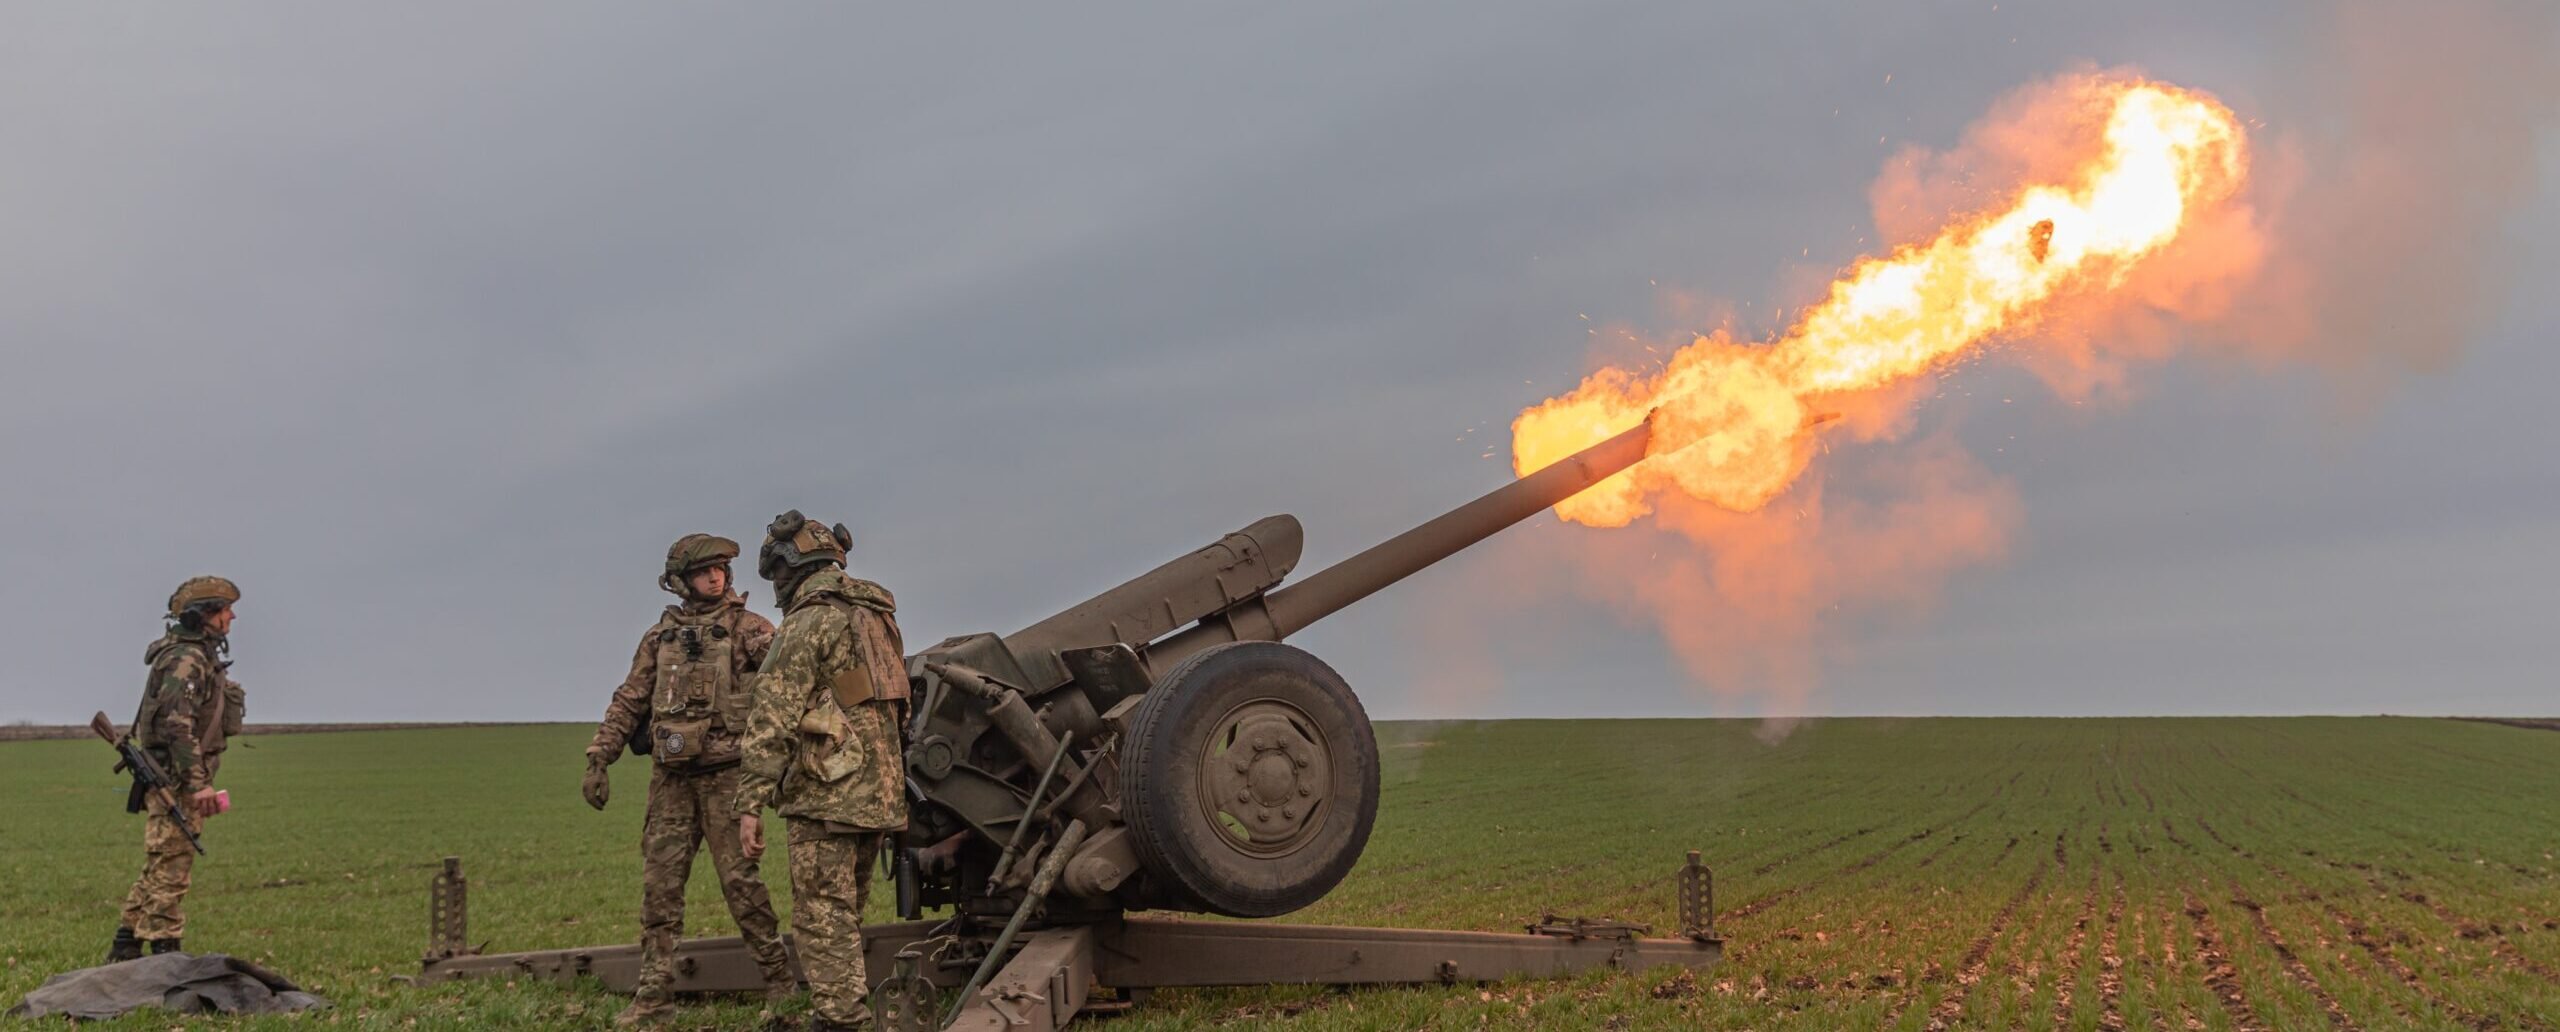 NATO: Russia’s artillery advantage over Ukraine could reach 10:1